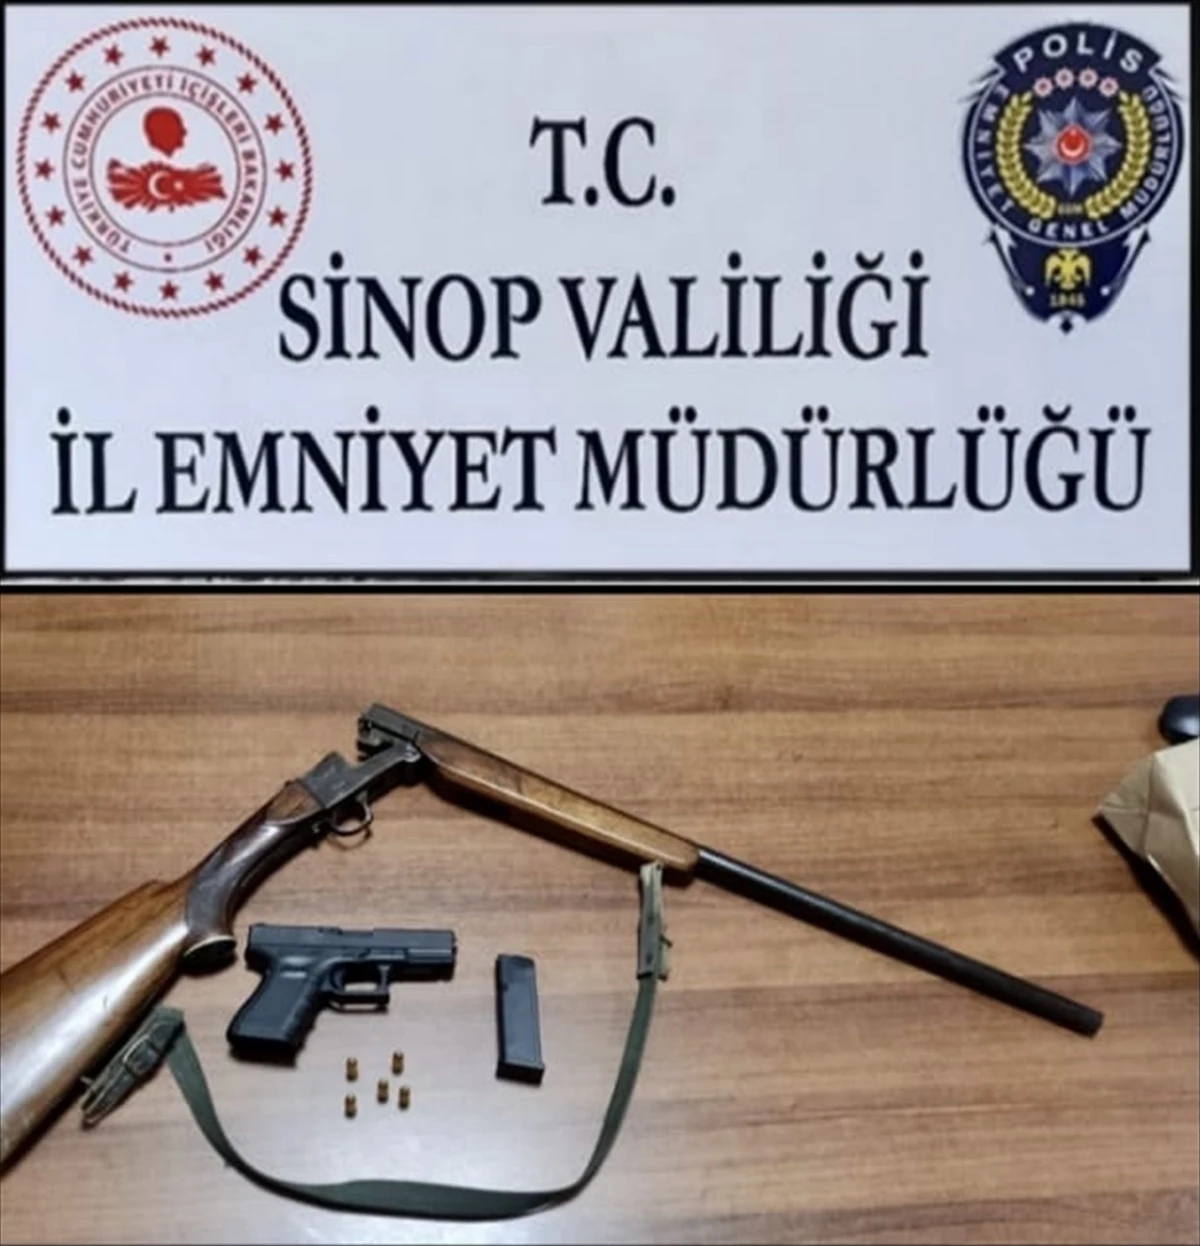 Sinop'ta ruhsatsız tüfek ve tabanca ele geçirildi